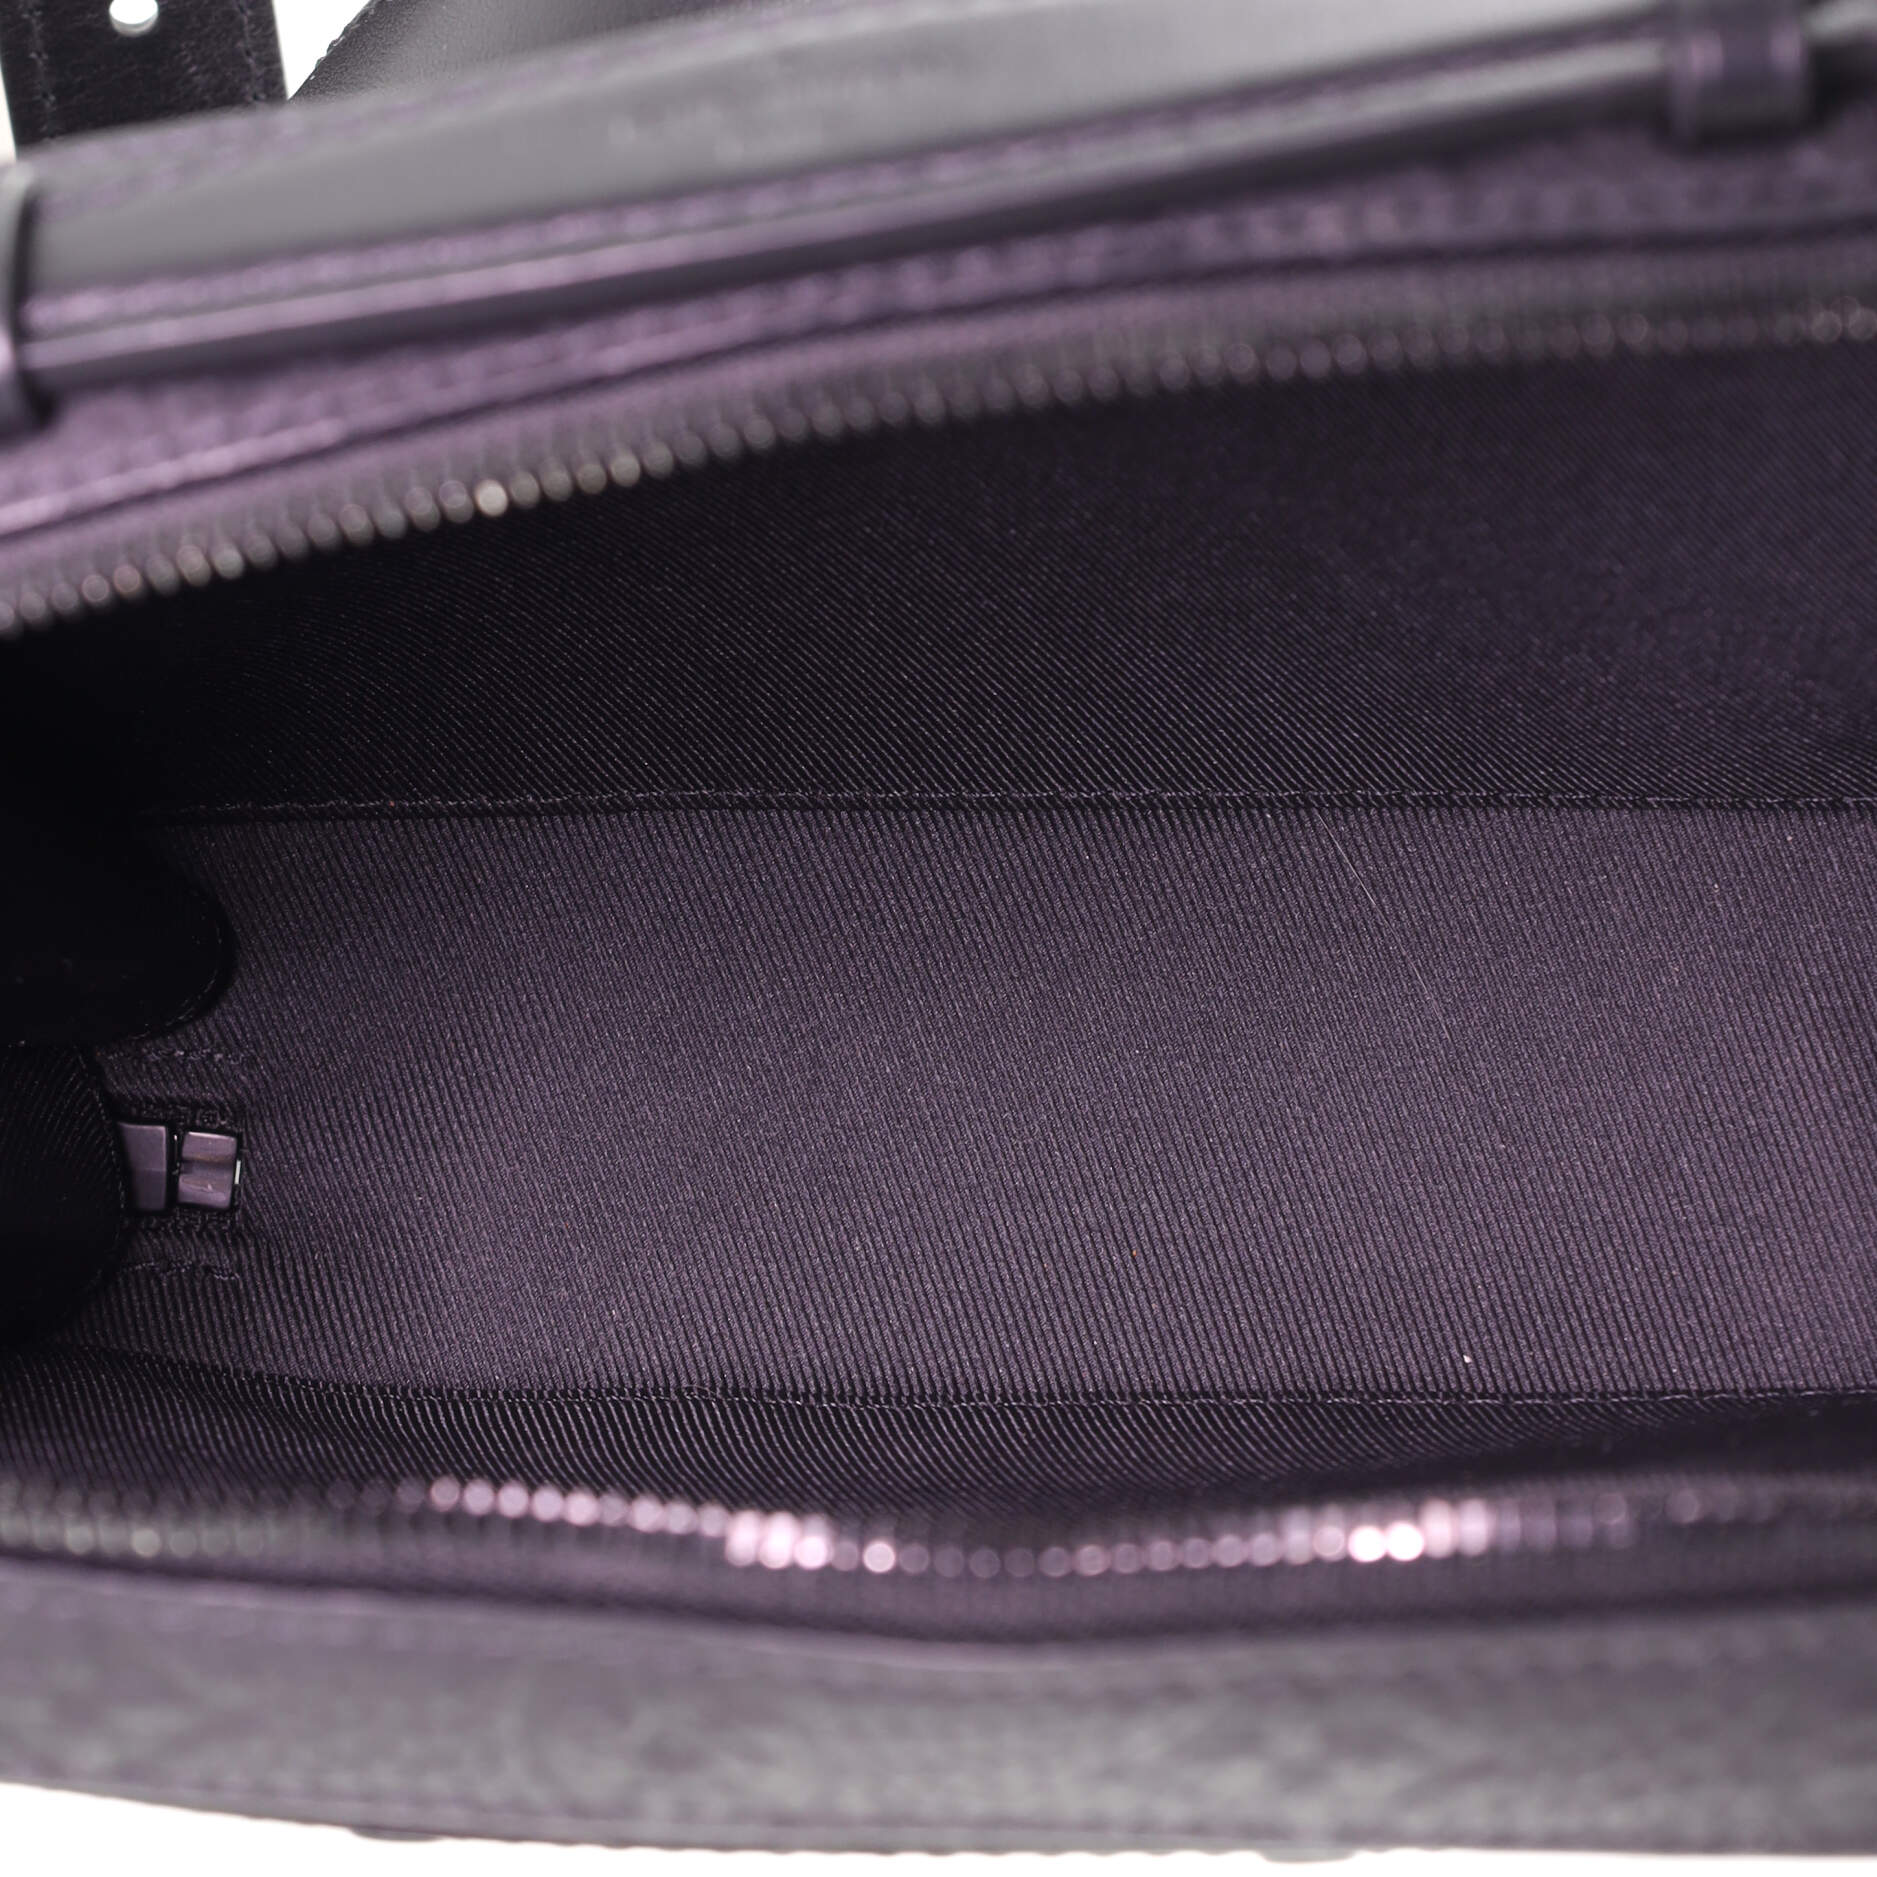 Louis Vuitton Handle Soft Trunk Bag Empreinte Leather Black